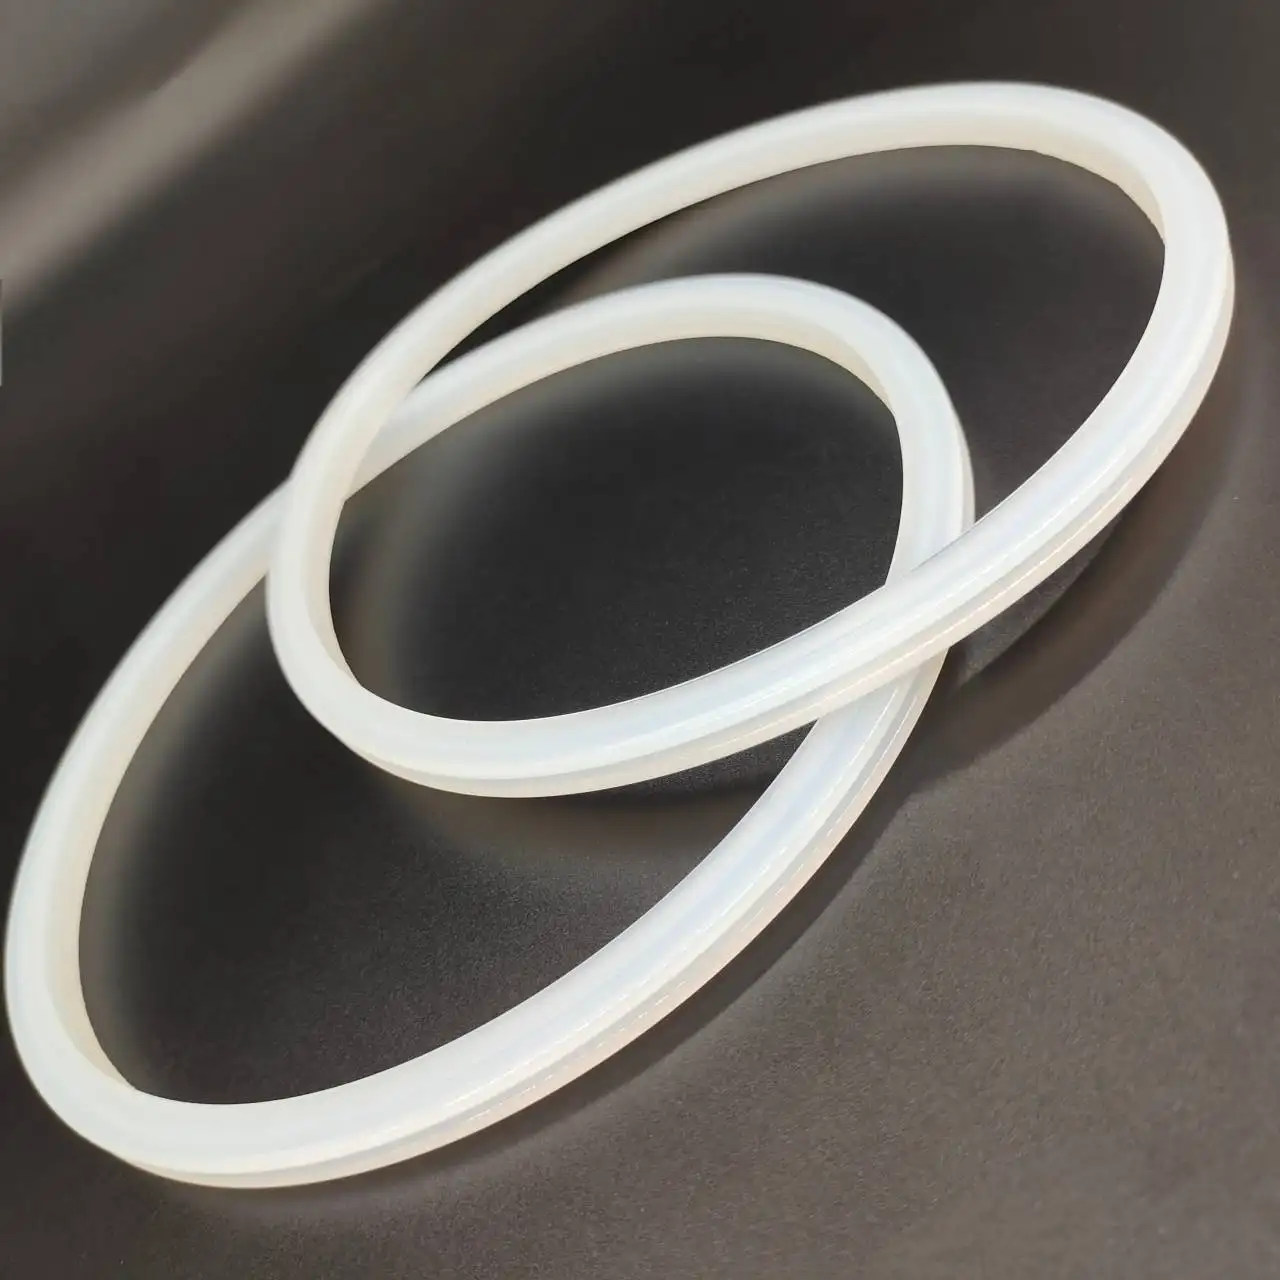 Direkt verkauf von gummi förmigen Teilen mit hoch temperatur beständigen Silikon dicht ringen ab Werk